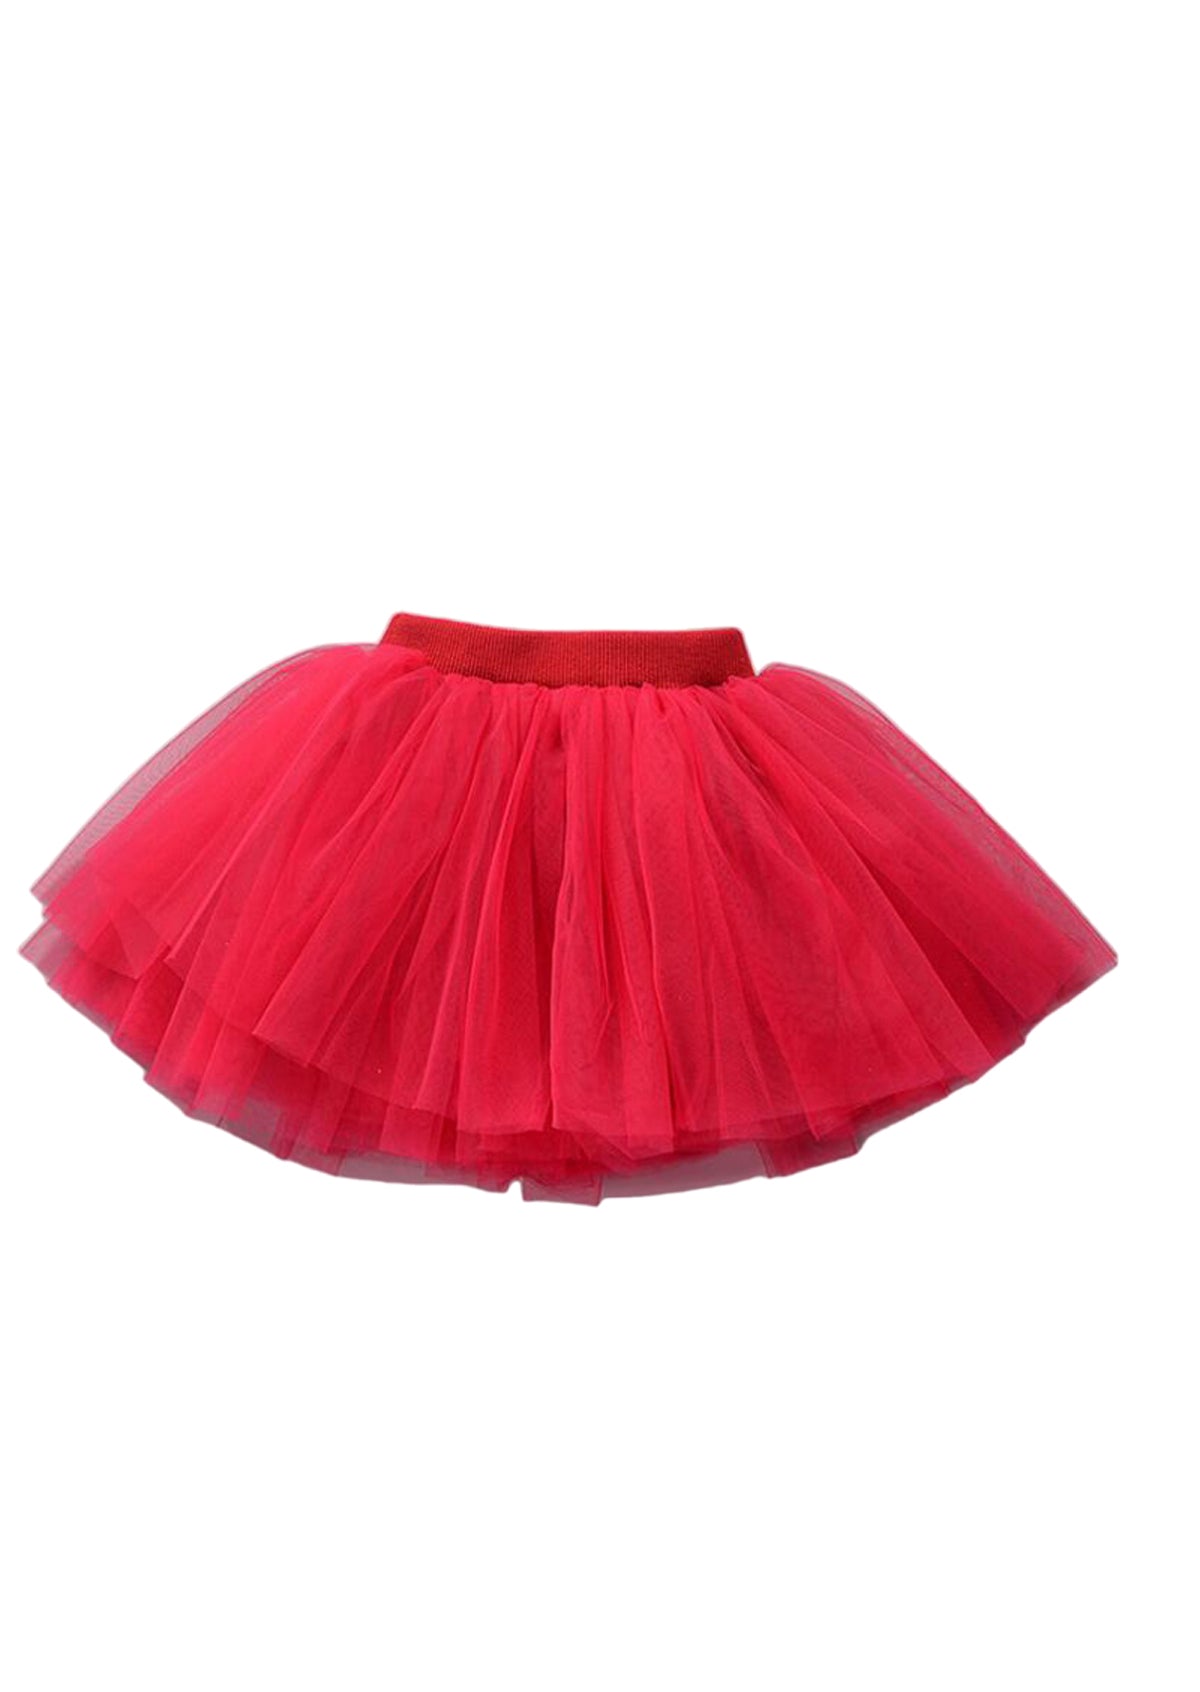 Red Tutu Tulle Skirt